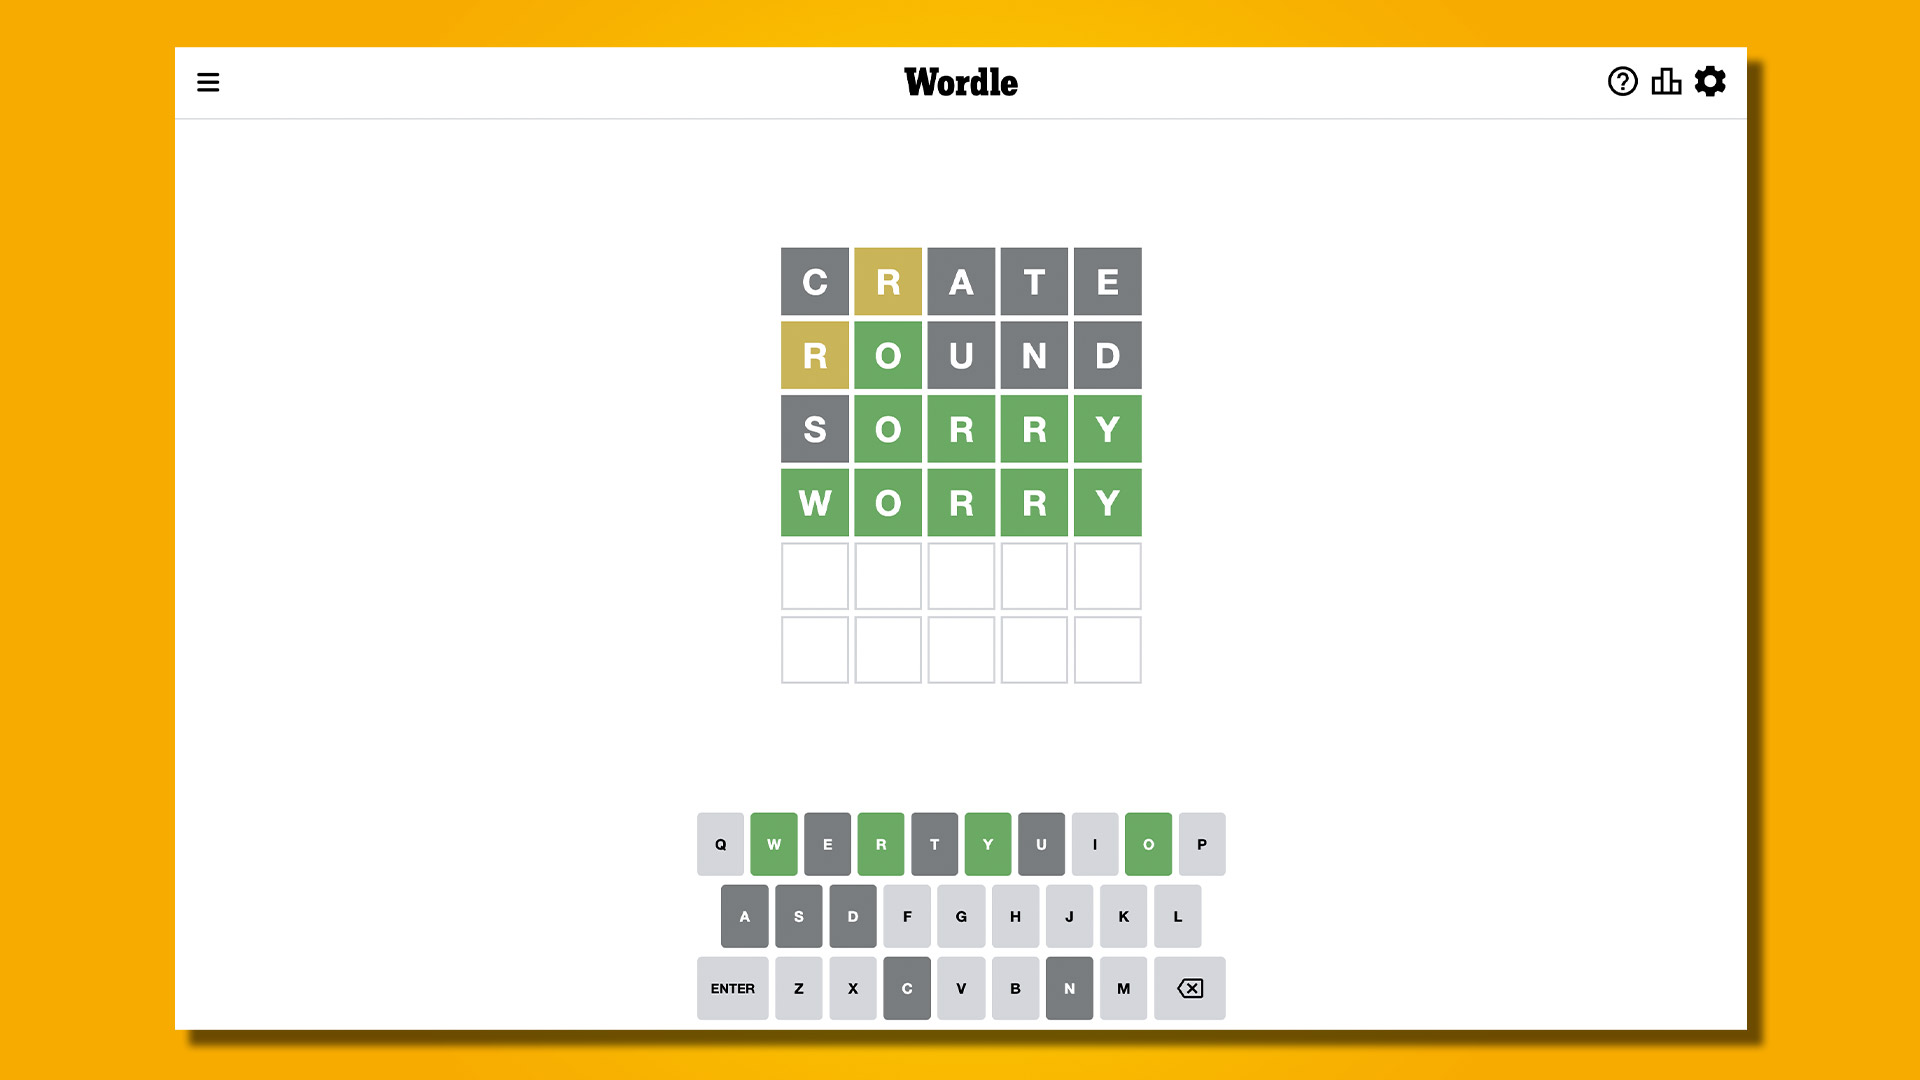 Réponse Wordle 587, 27 janvier 2023, sur fond jaune